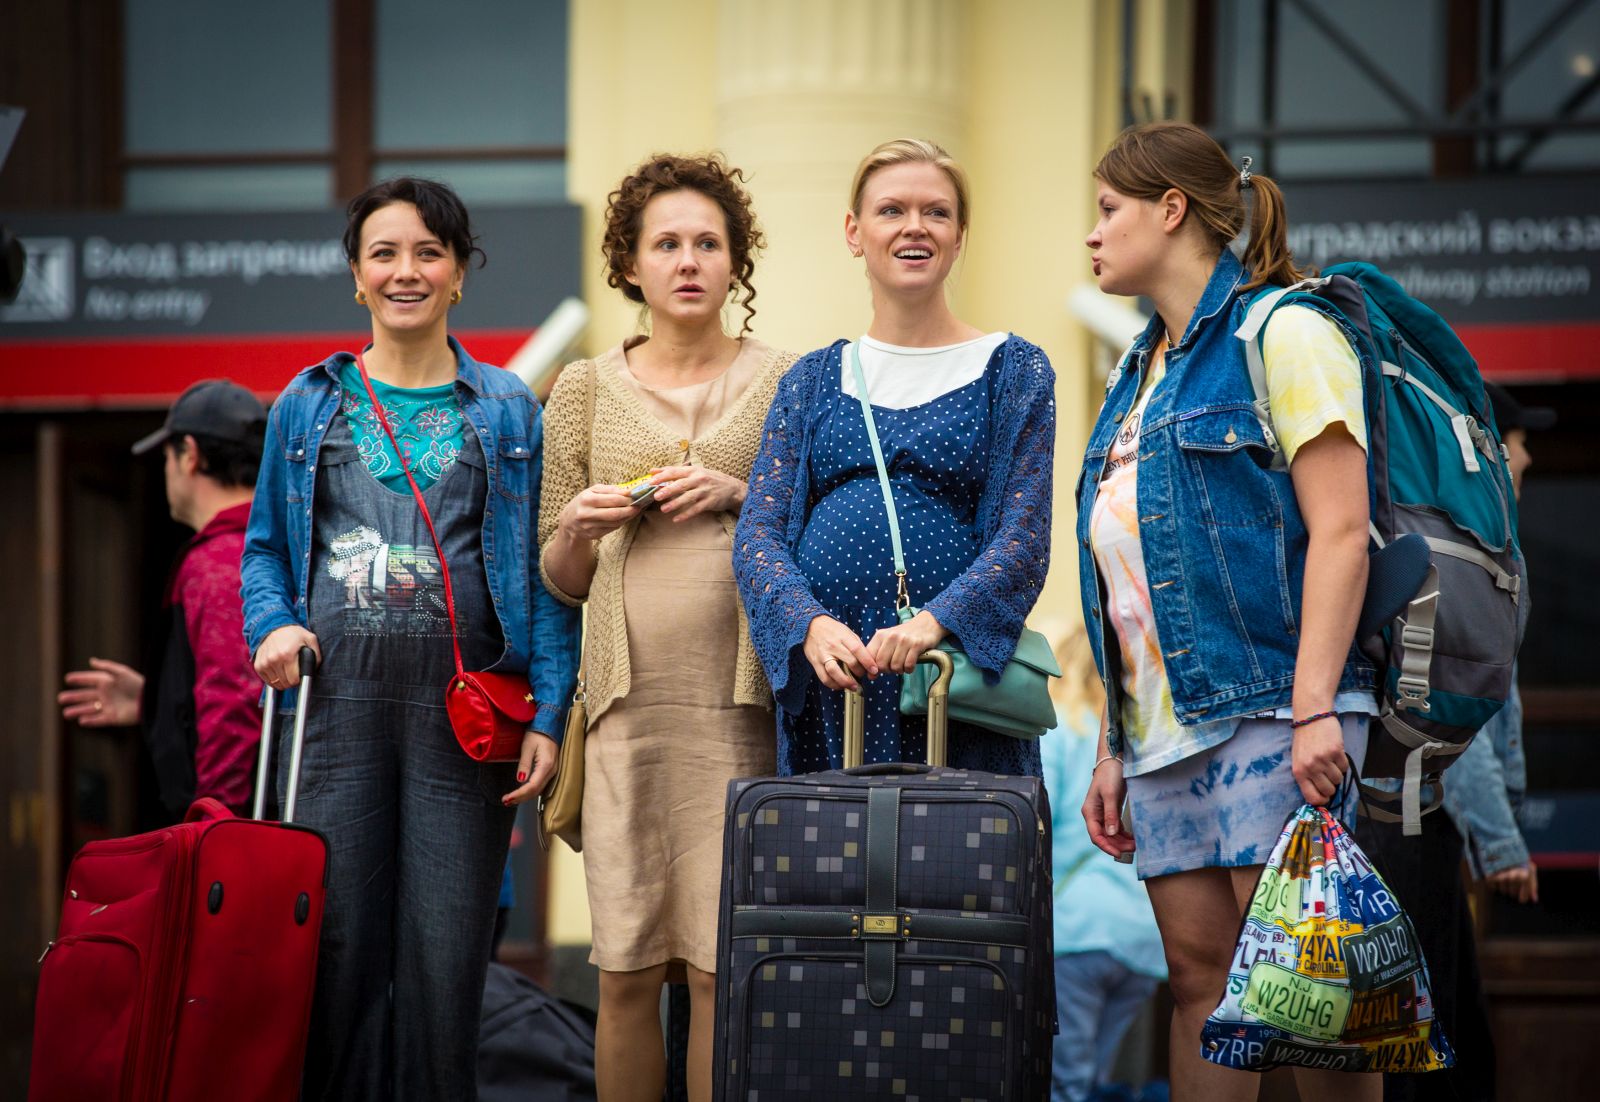 Анастасия Попова, Анна Котова, Лина Миримская и Мария Осипова отправились в «Бэби-тур» в трейлере новой комедии